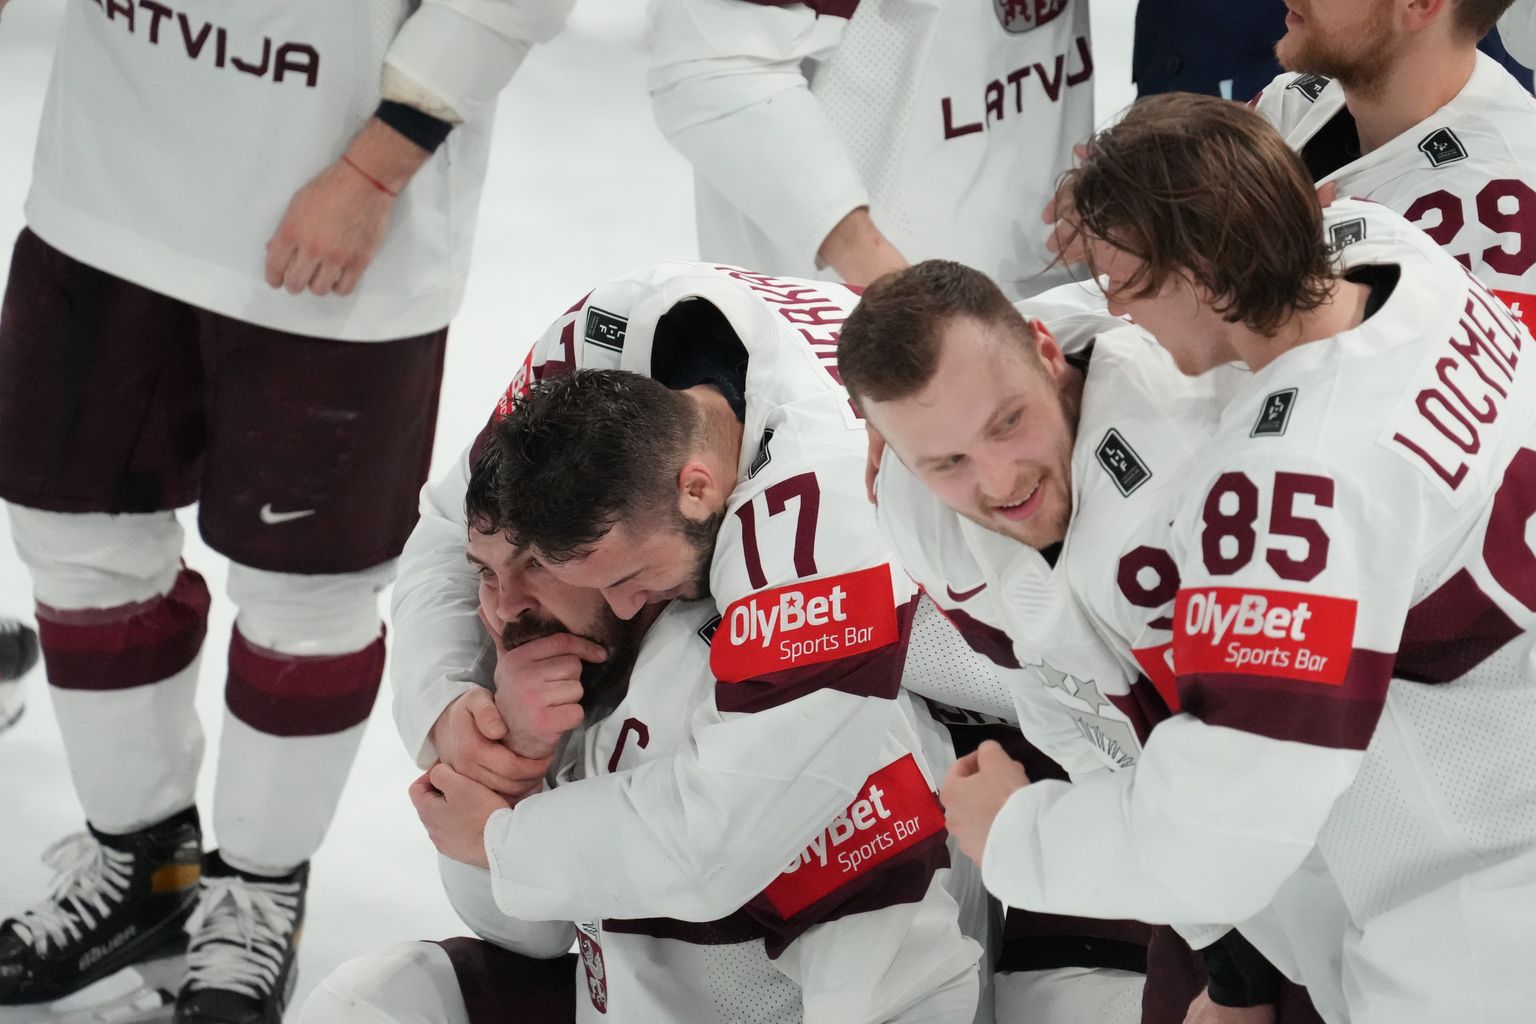 Läti jäähokikoondise mängusärgil oli Olybeti logo.